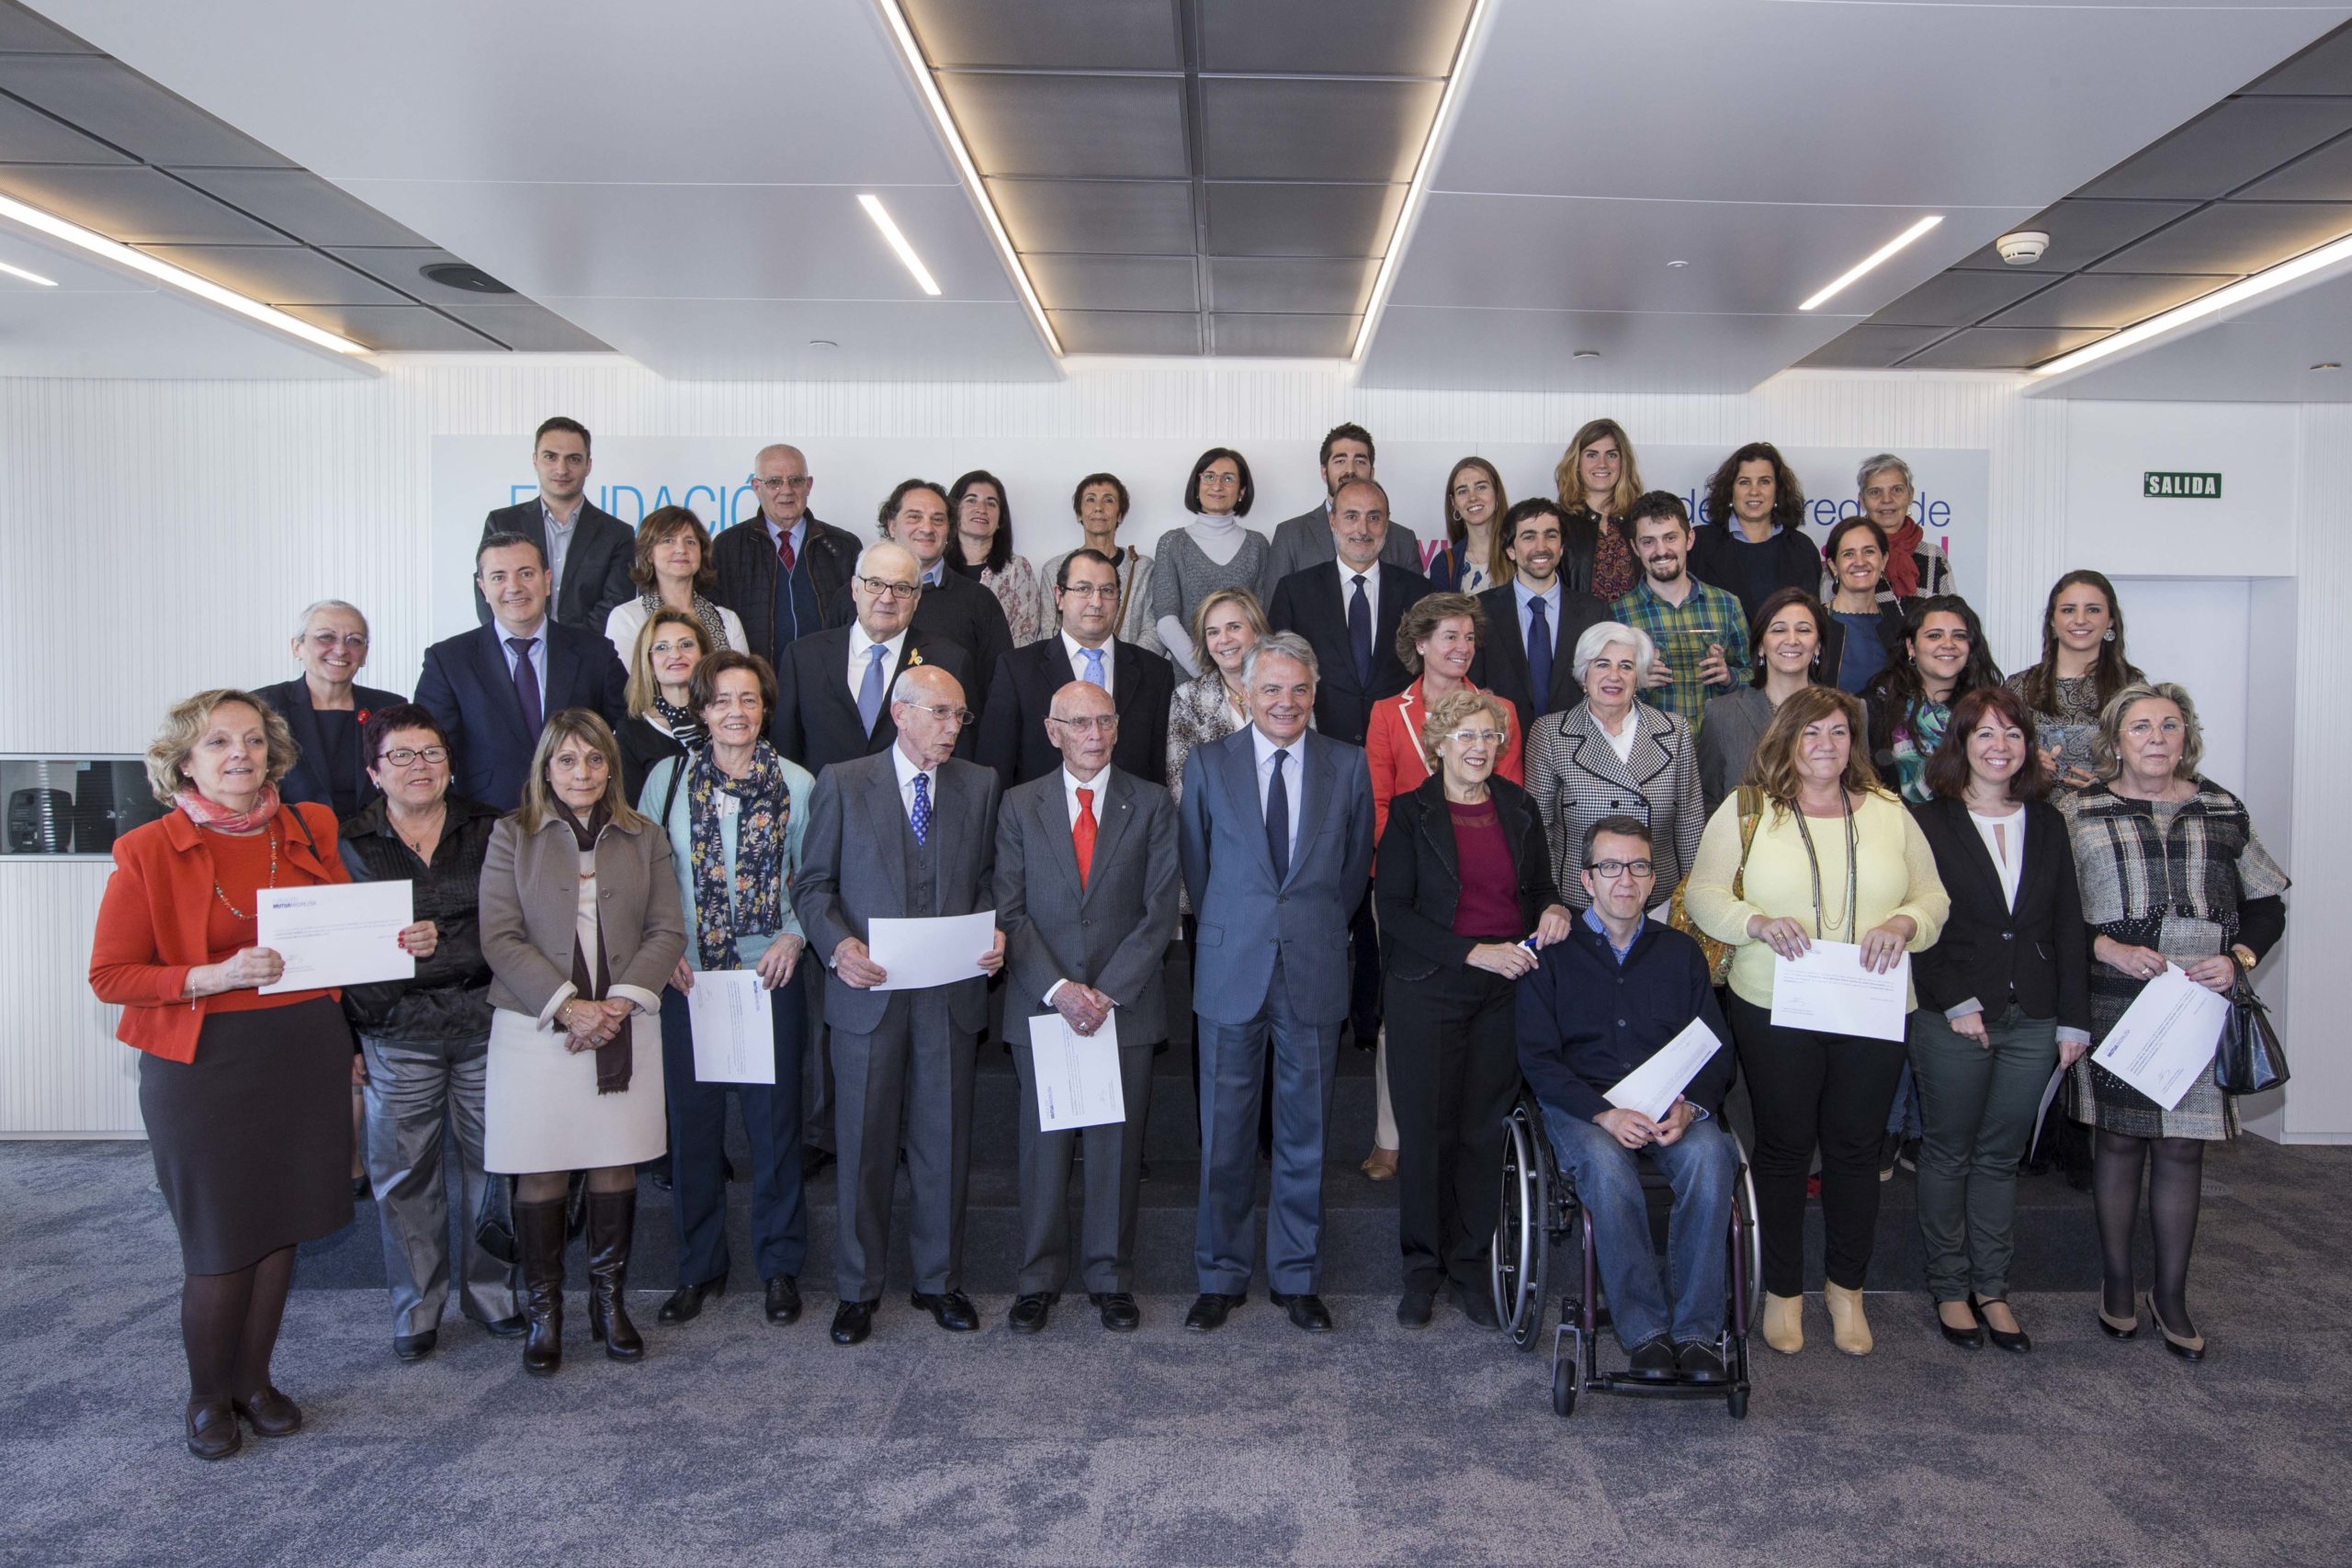 16 ONG Acreditadas reciben el apoyo de Fundación Mutua Madrileña